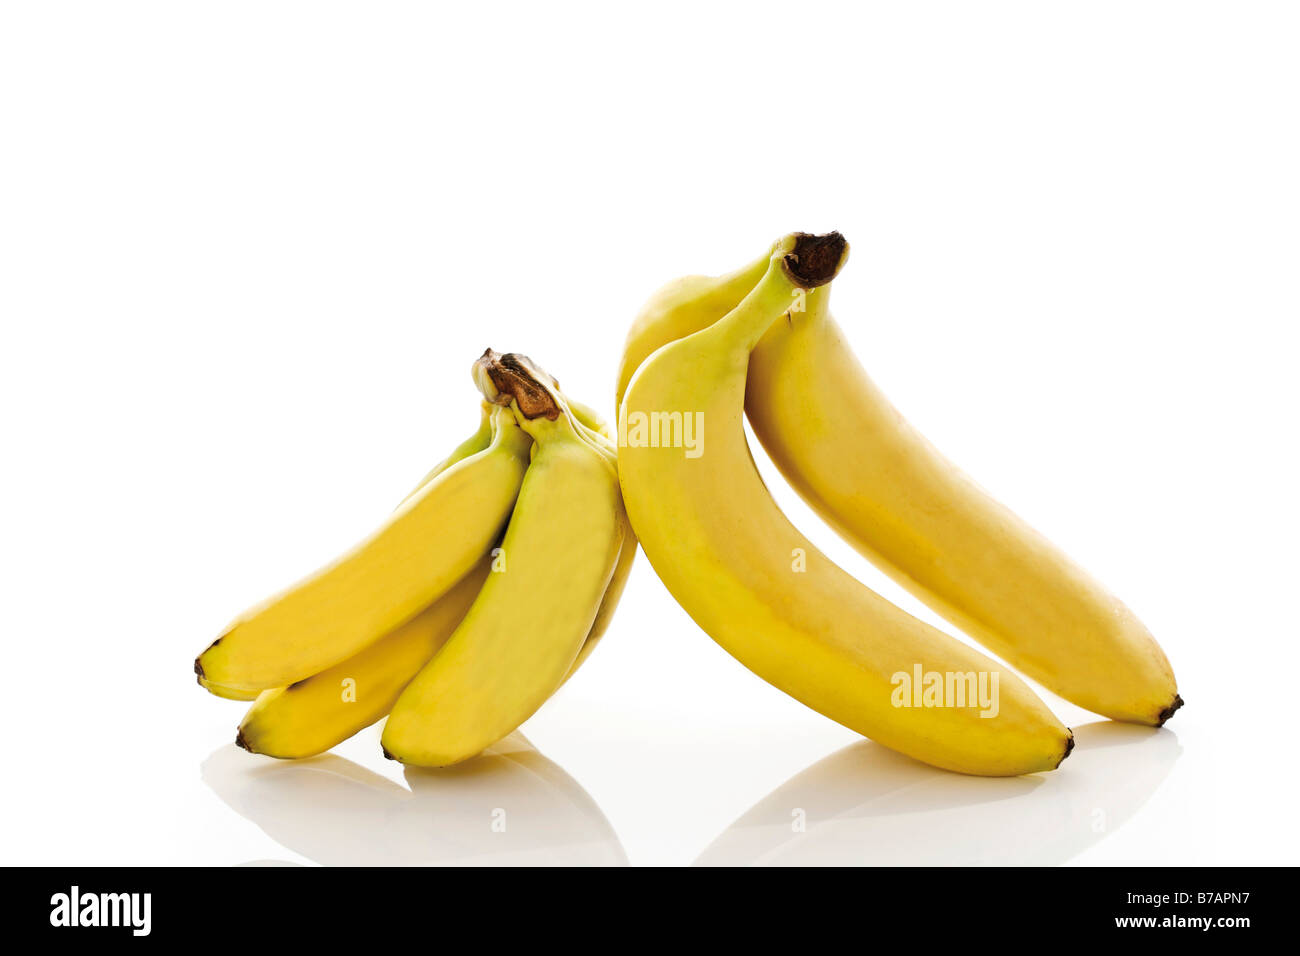 Baby bananas and bananas Stock Photo